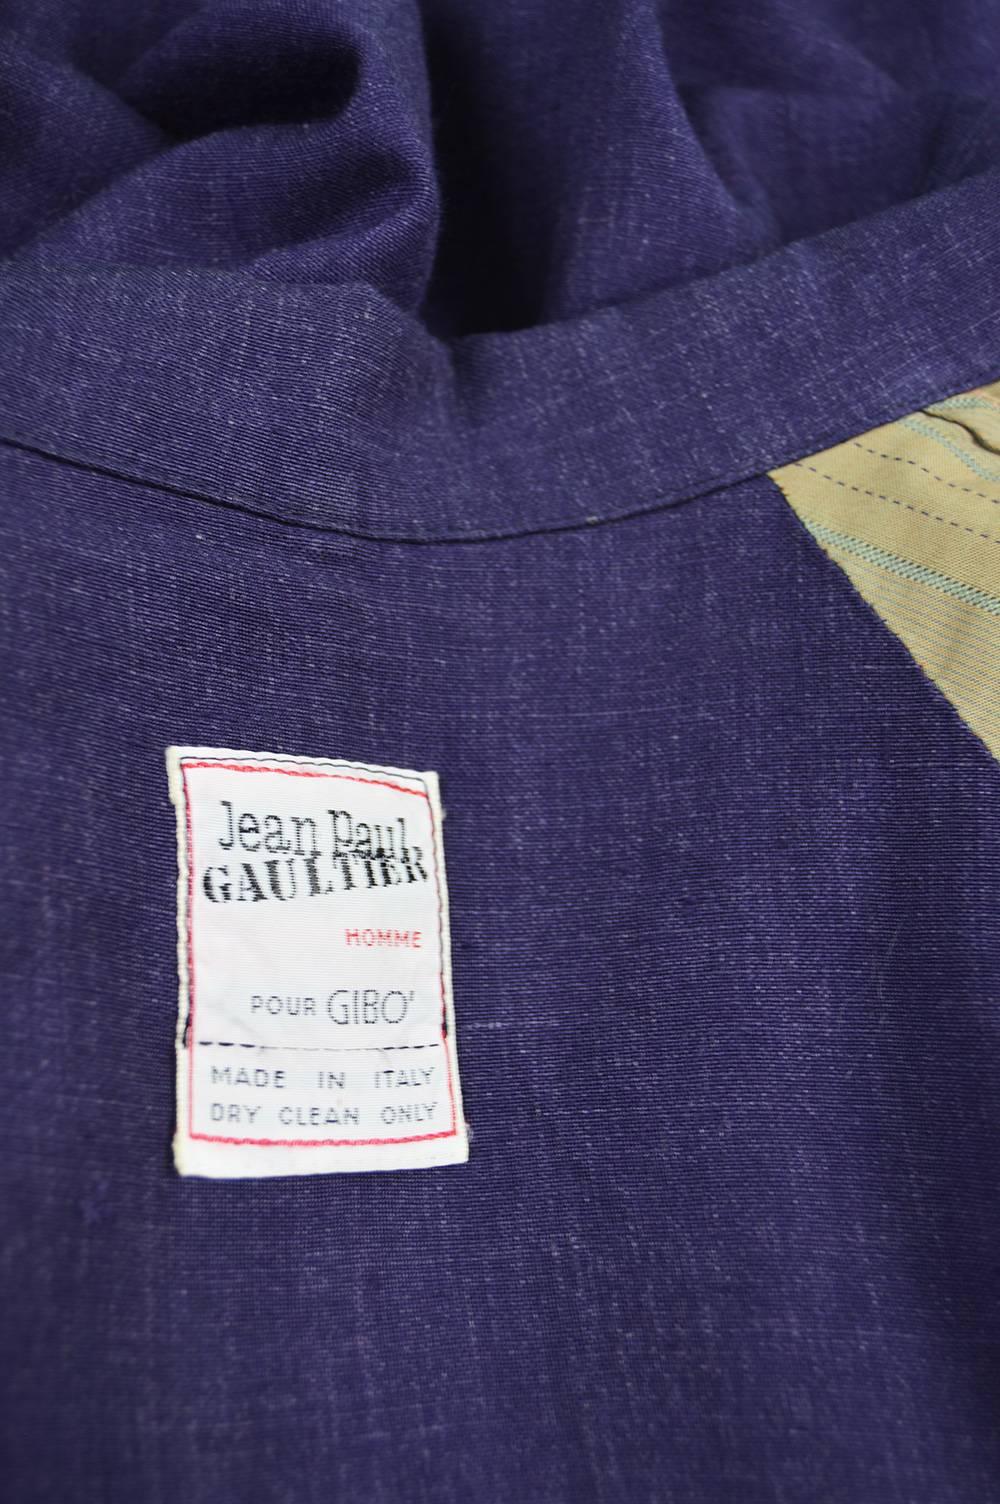 Jean Paul Gaultier Homme Pour Gibo Loose Purple Linen Coat, 1980s 4